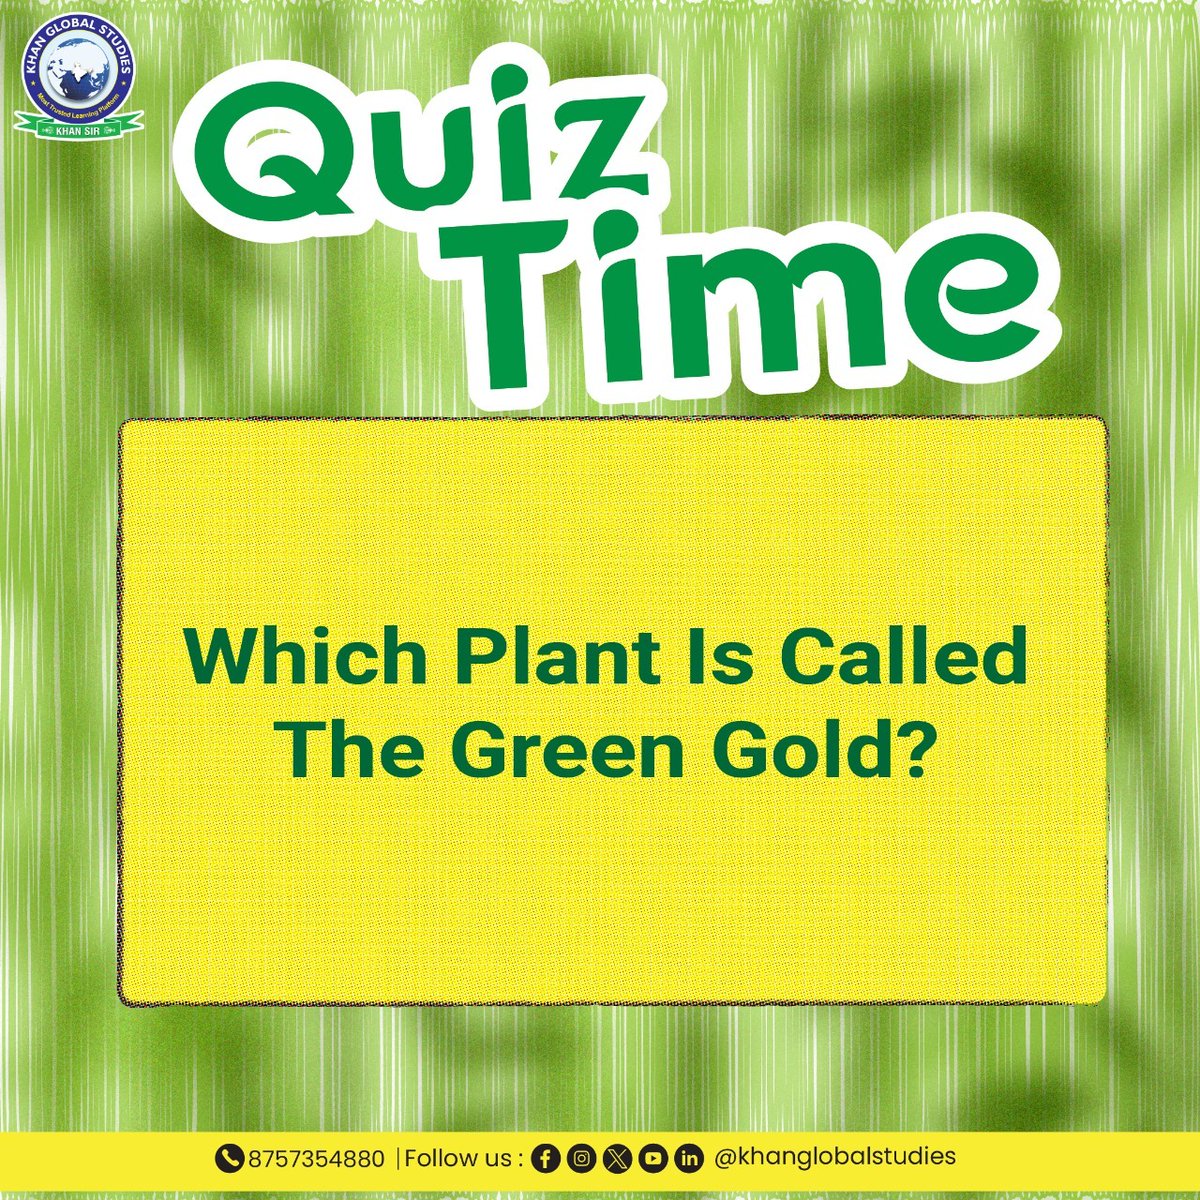 परीक्षा की सफलता में आगे बढ़ने के लिए कुछ महत्वपूर्ण Quiz के साथ अपने ज्ञान को आगे बढ़ाएं एवं मजबूत बनाएं।
.
.
.
.
#greengold #plants #greenplants #trees #savetree #didyouknow #UnleashYourKnowledge #quiz #KhanGlobalStudies #khansir #quiztime #learnmore